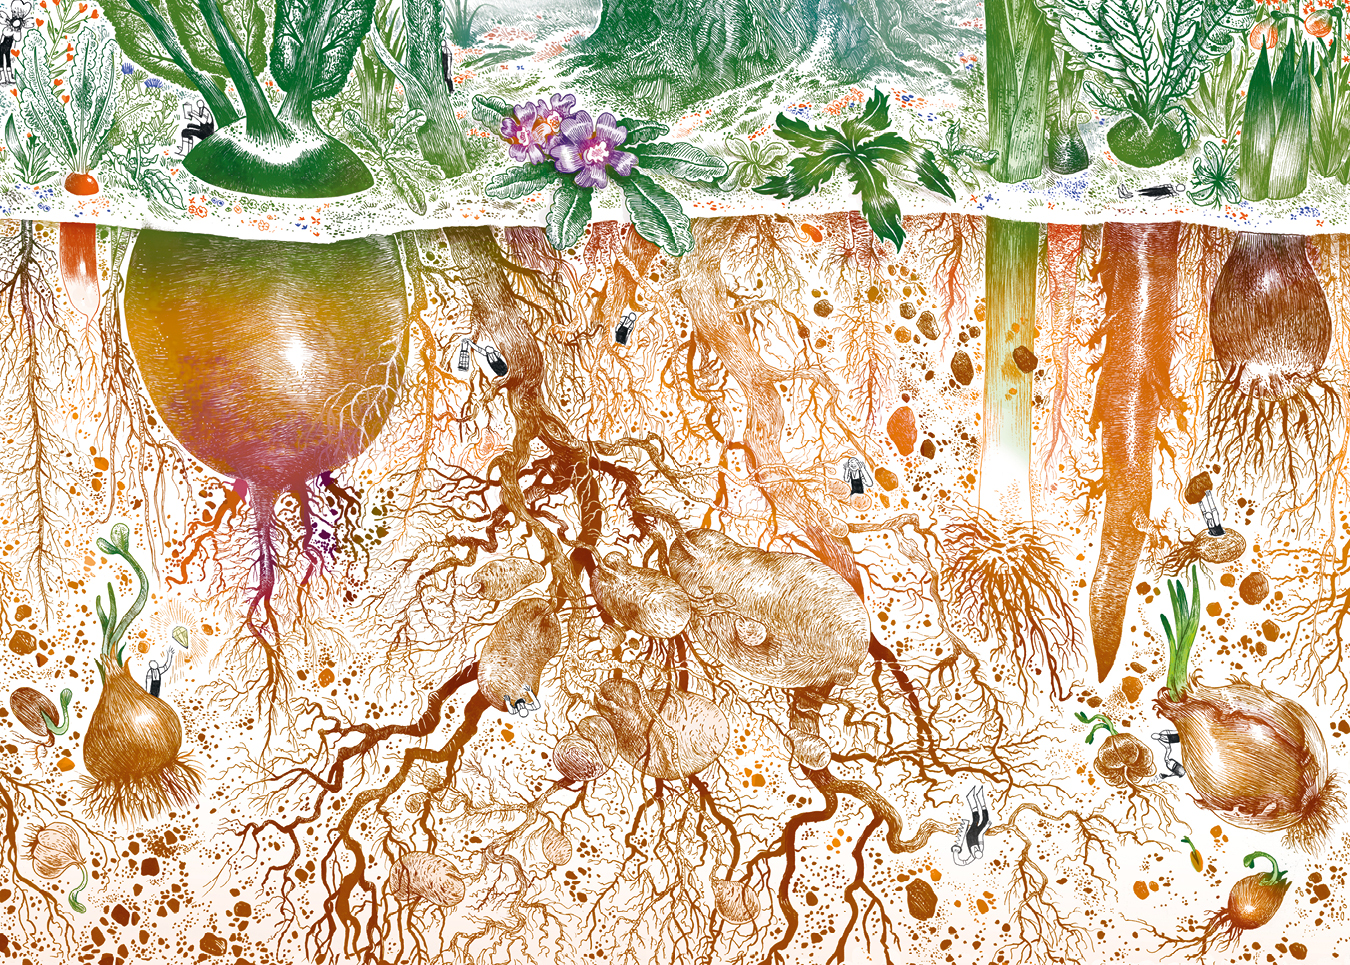 Le jardinage des racines, par Véronique Mure. Garden_Lab 10, Jardins & sécheresse.